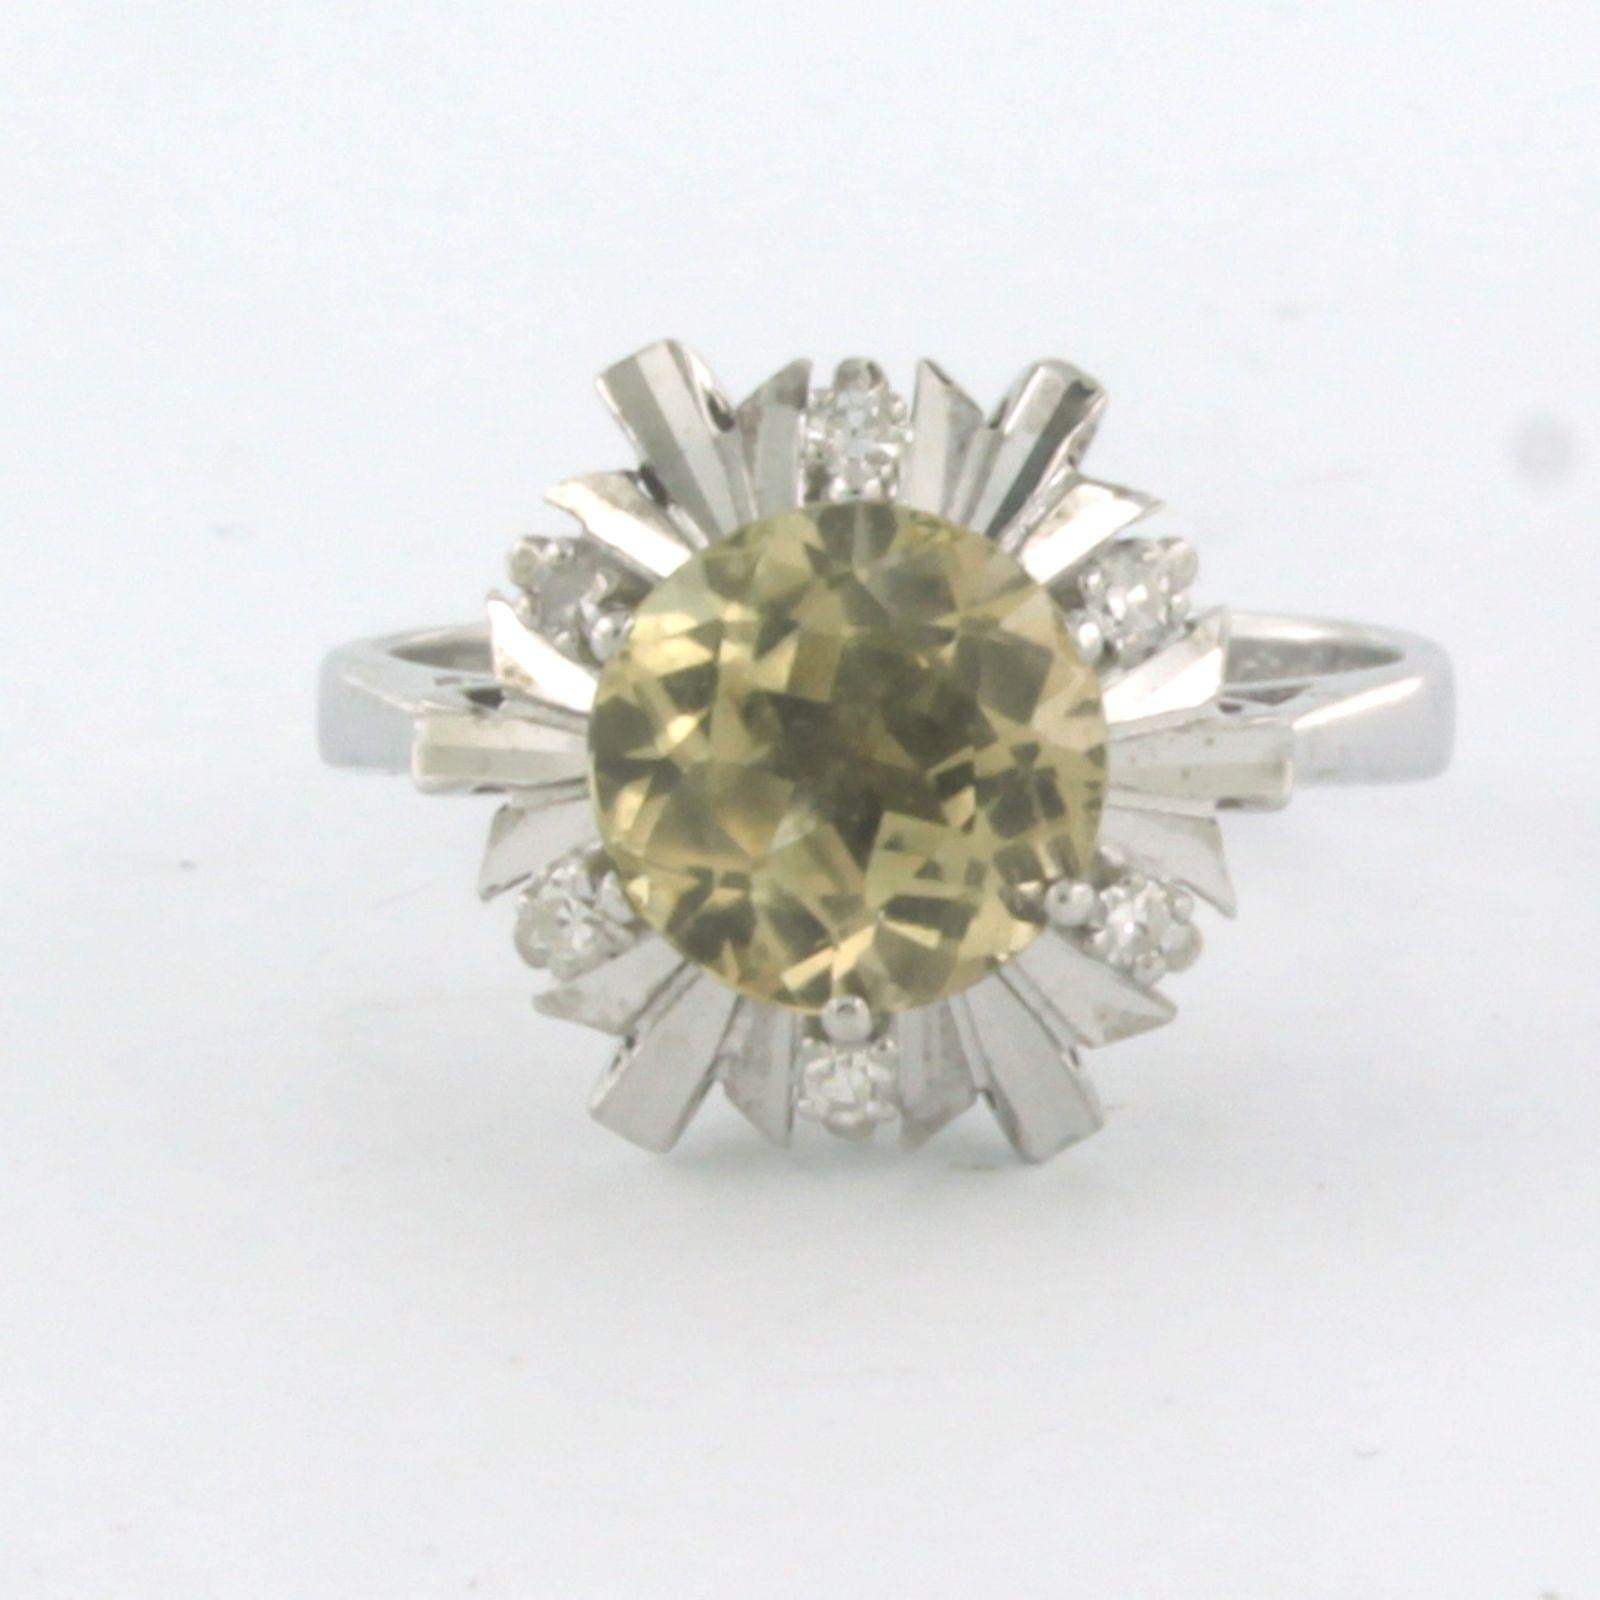 Ring aus 18 Karat Weißgold mit einem Citrin in der Mitte. 2,33ct und Entourage einzelne geschliffene Diamanten bis zu. 0,09ct - F/G - VS/SI - Ringgröße U.S. 8 - EU. 18.25(57)

ausführliche Beschreibung

die Oberseite des Rings hat einen Durchmesser